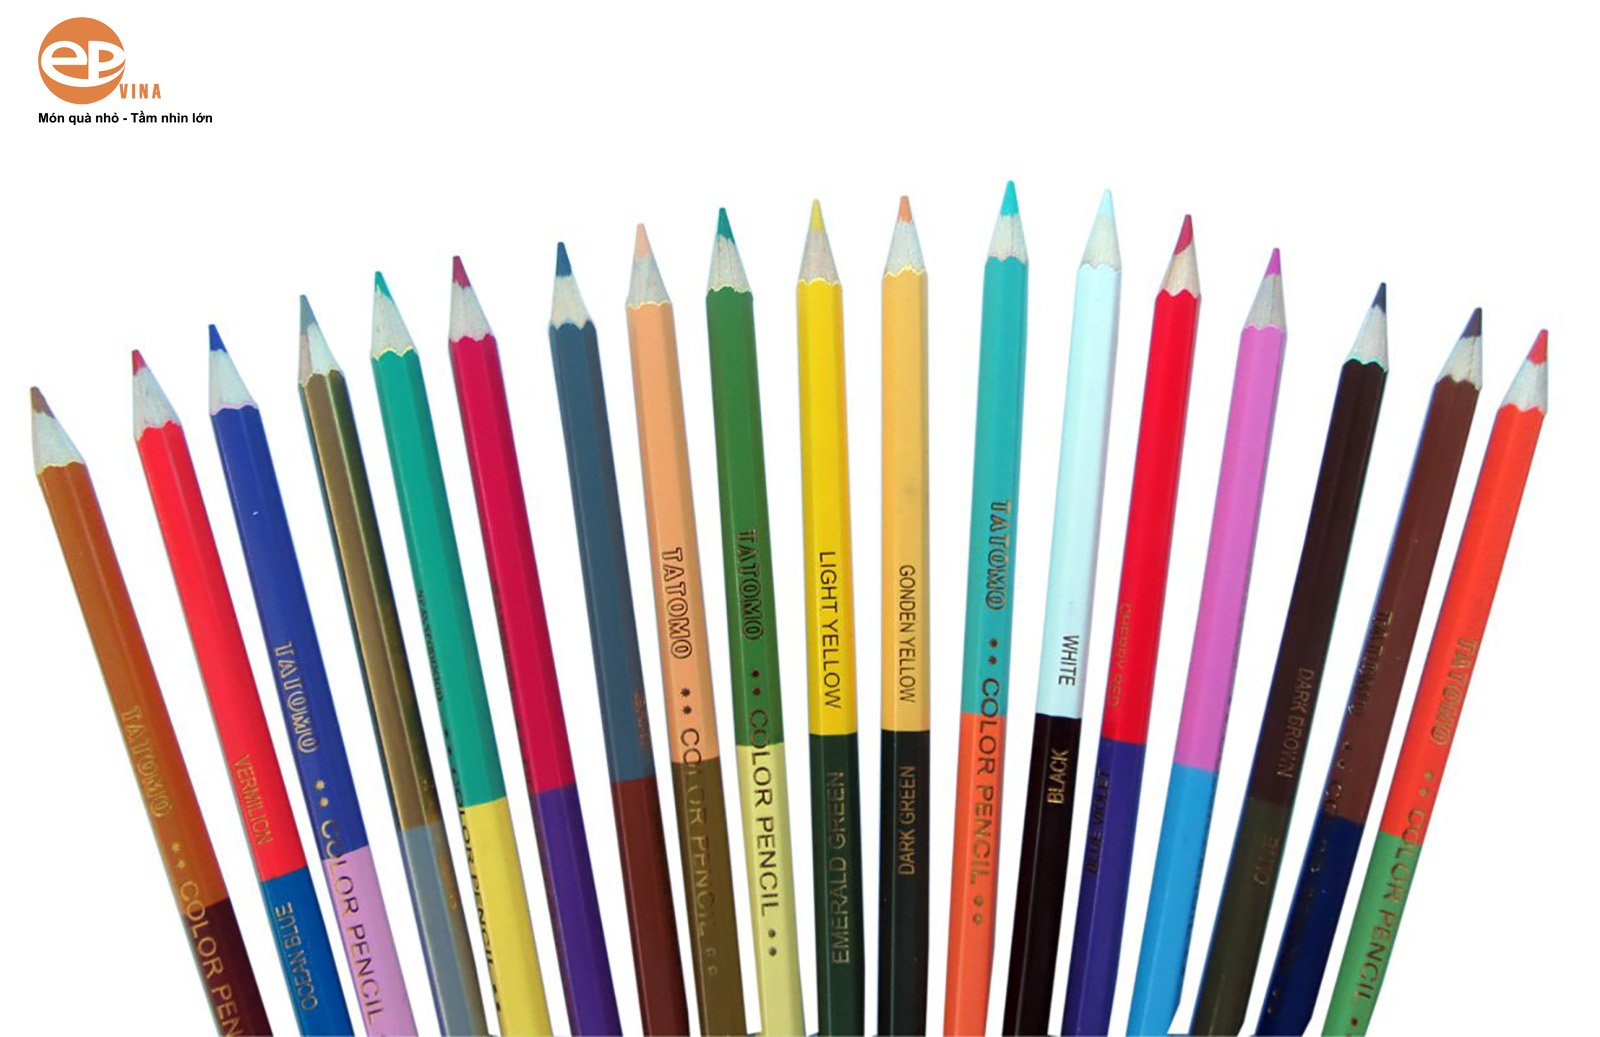 Mua bút chì để khắc xoắn ở đâu uy tín và đảm bảo chất lượng tốt?